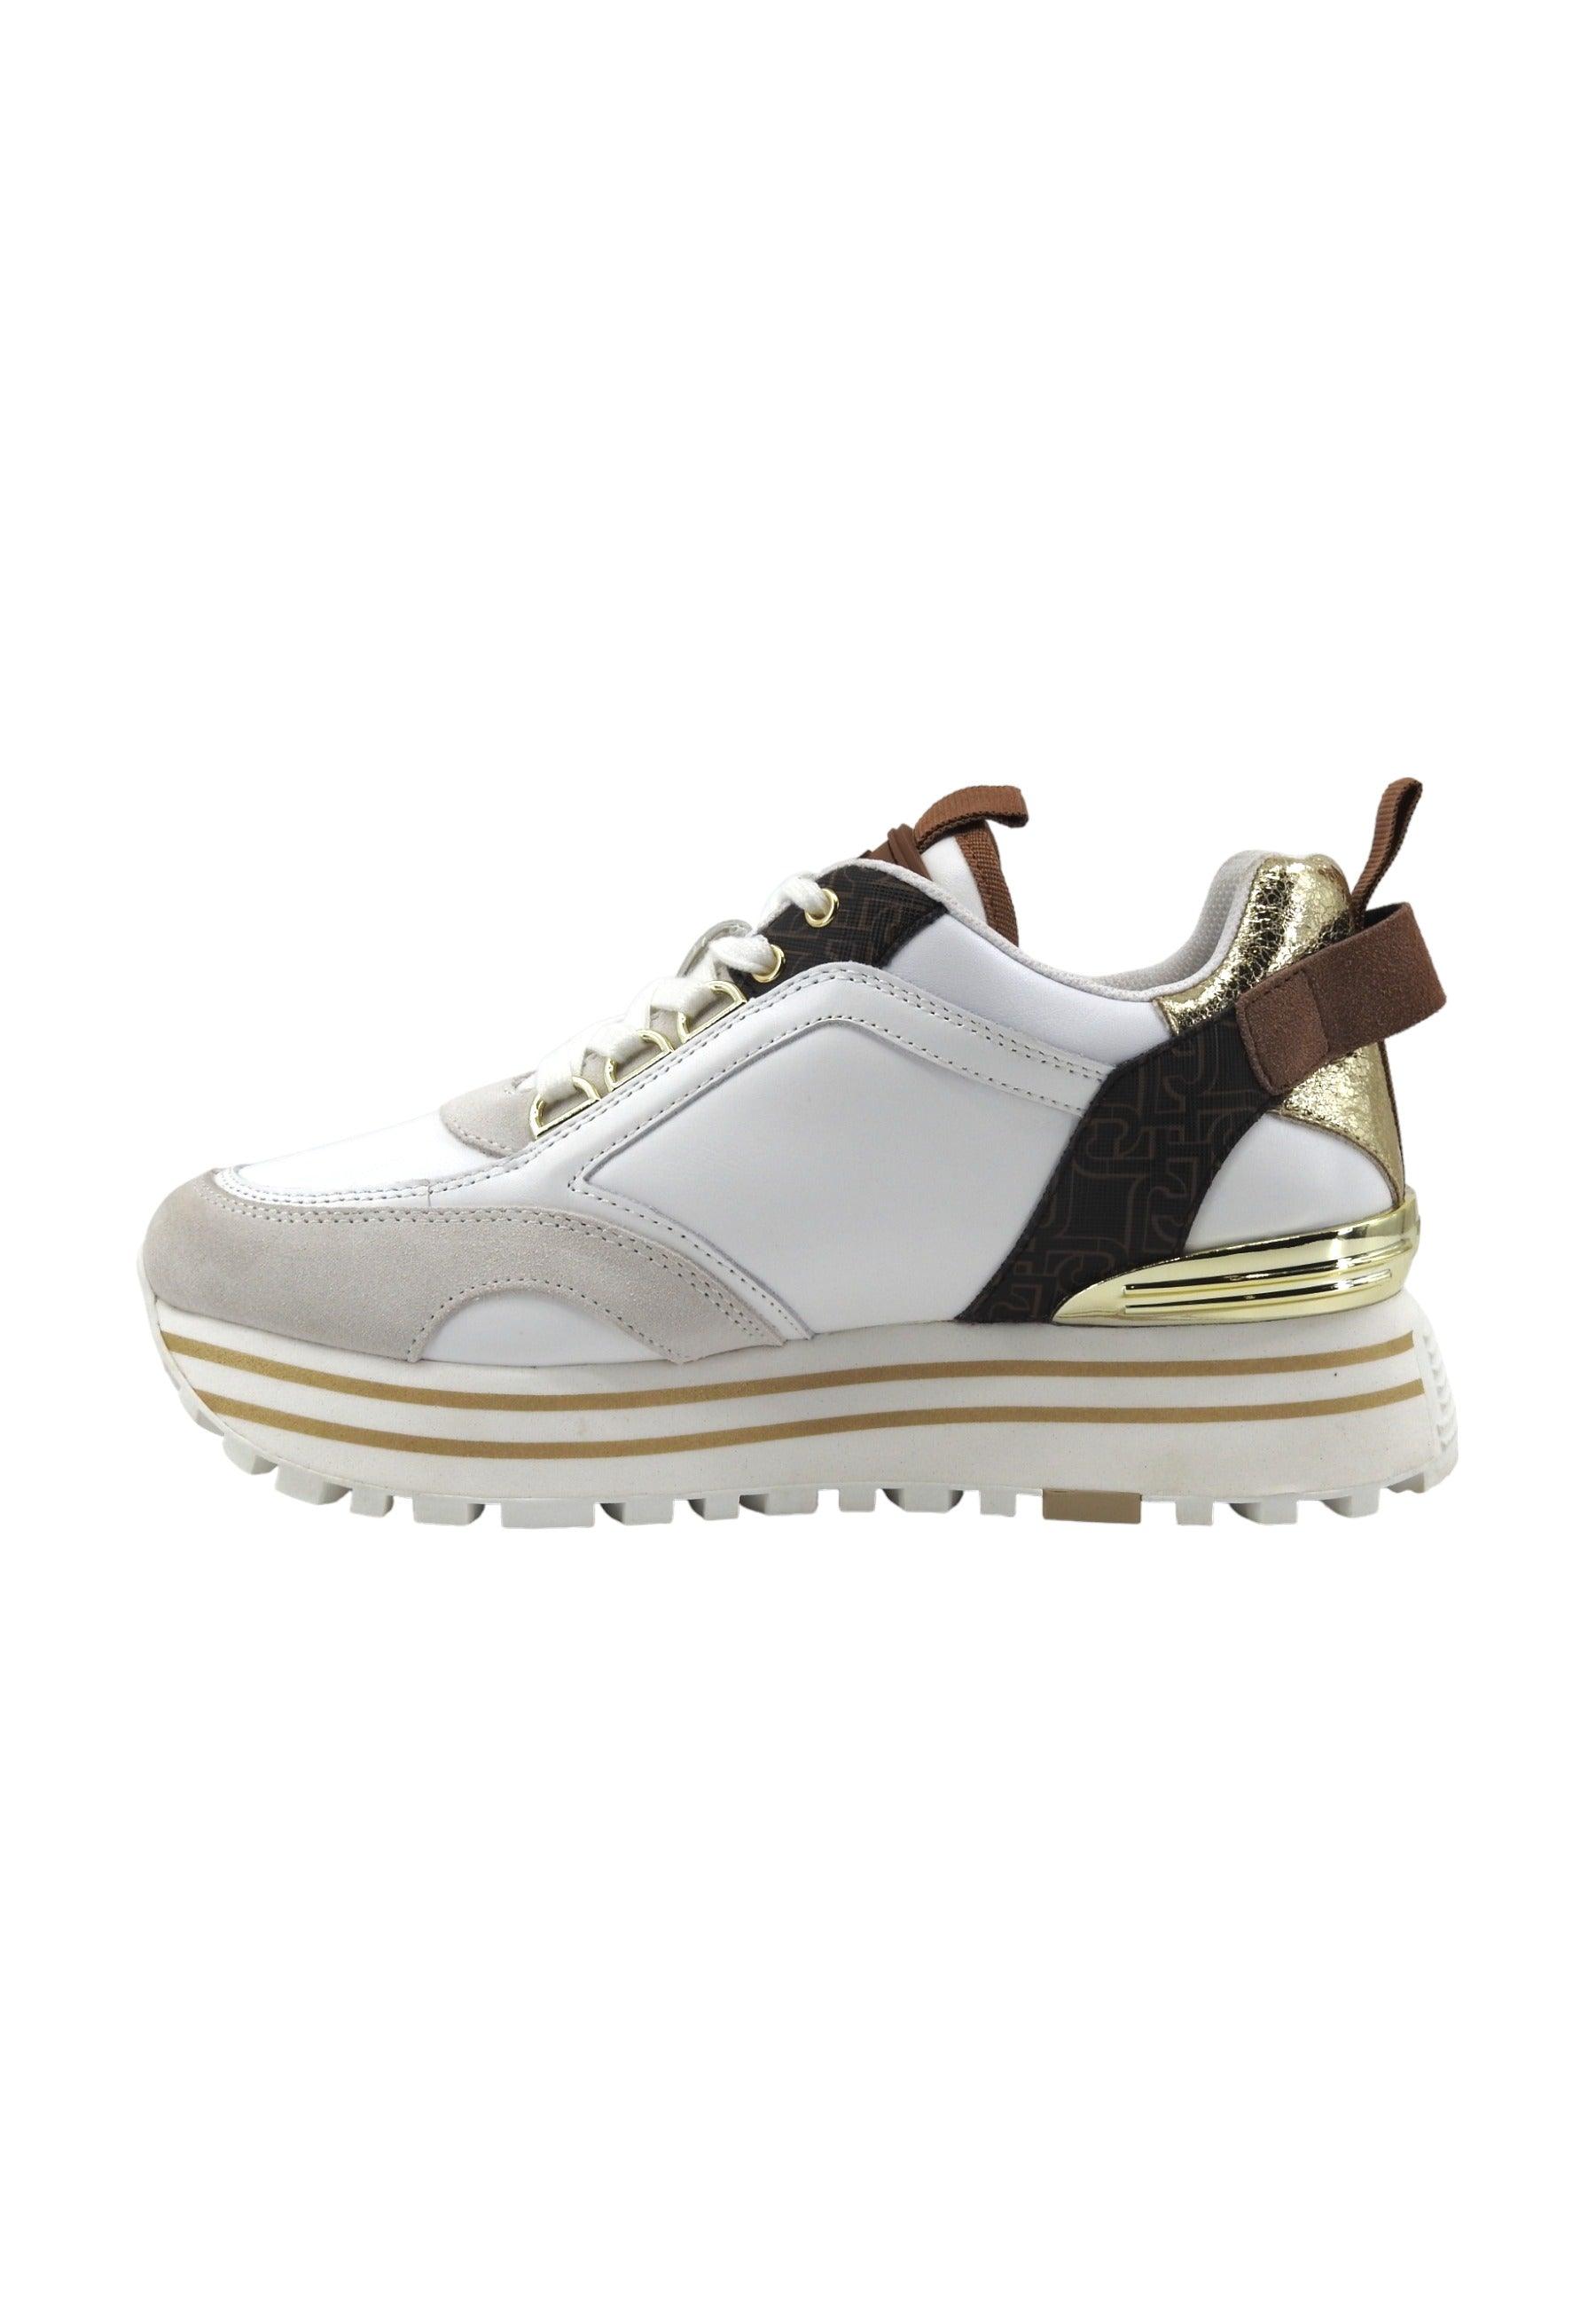 LIU JO Maxi Wonder 72 Sneaker Donna Off White Brown BA4057PX454 - Sandrini Calzature e Abbigliamento